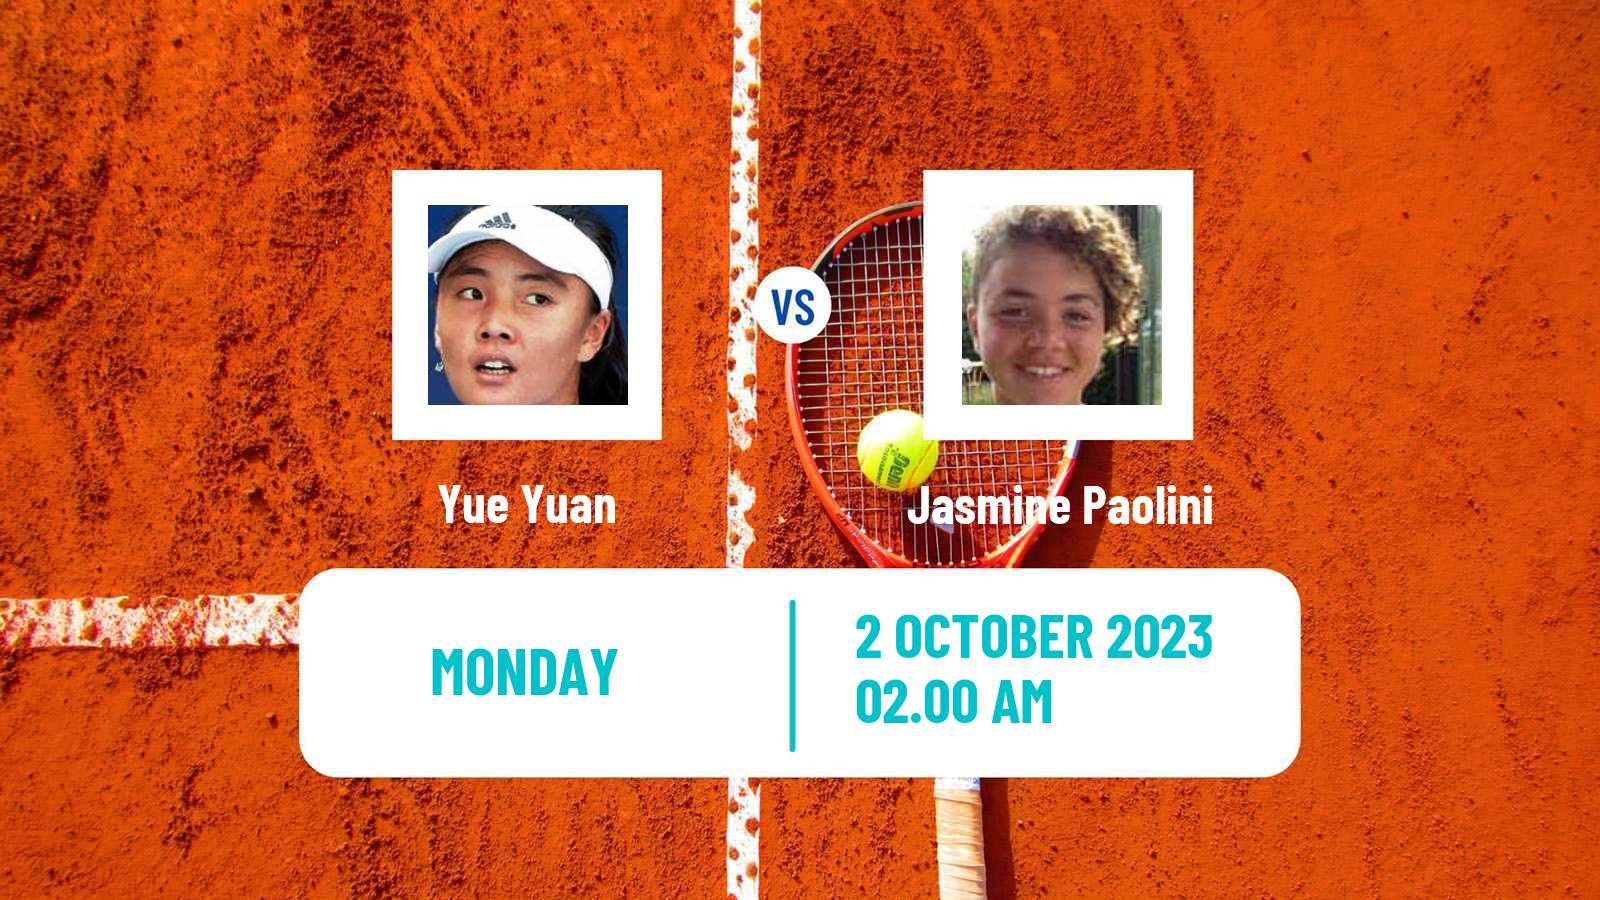 Tennis WTA Beijing Yue Yuan - Jasmine Paolini